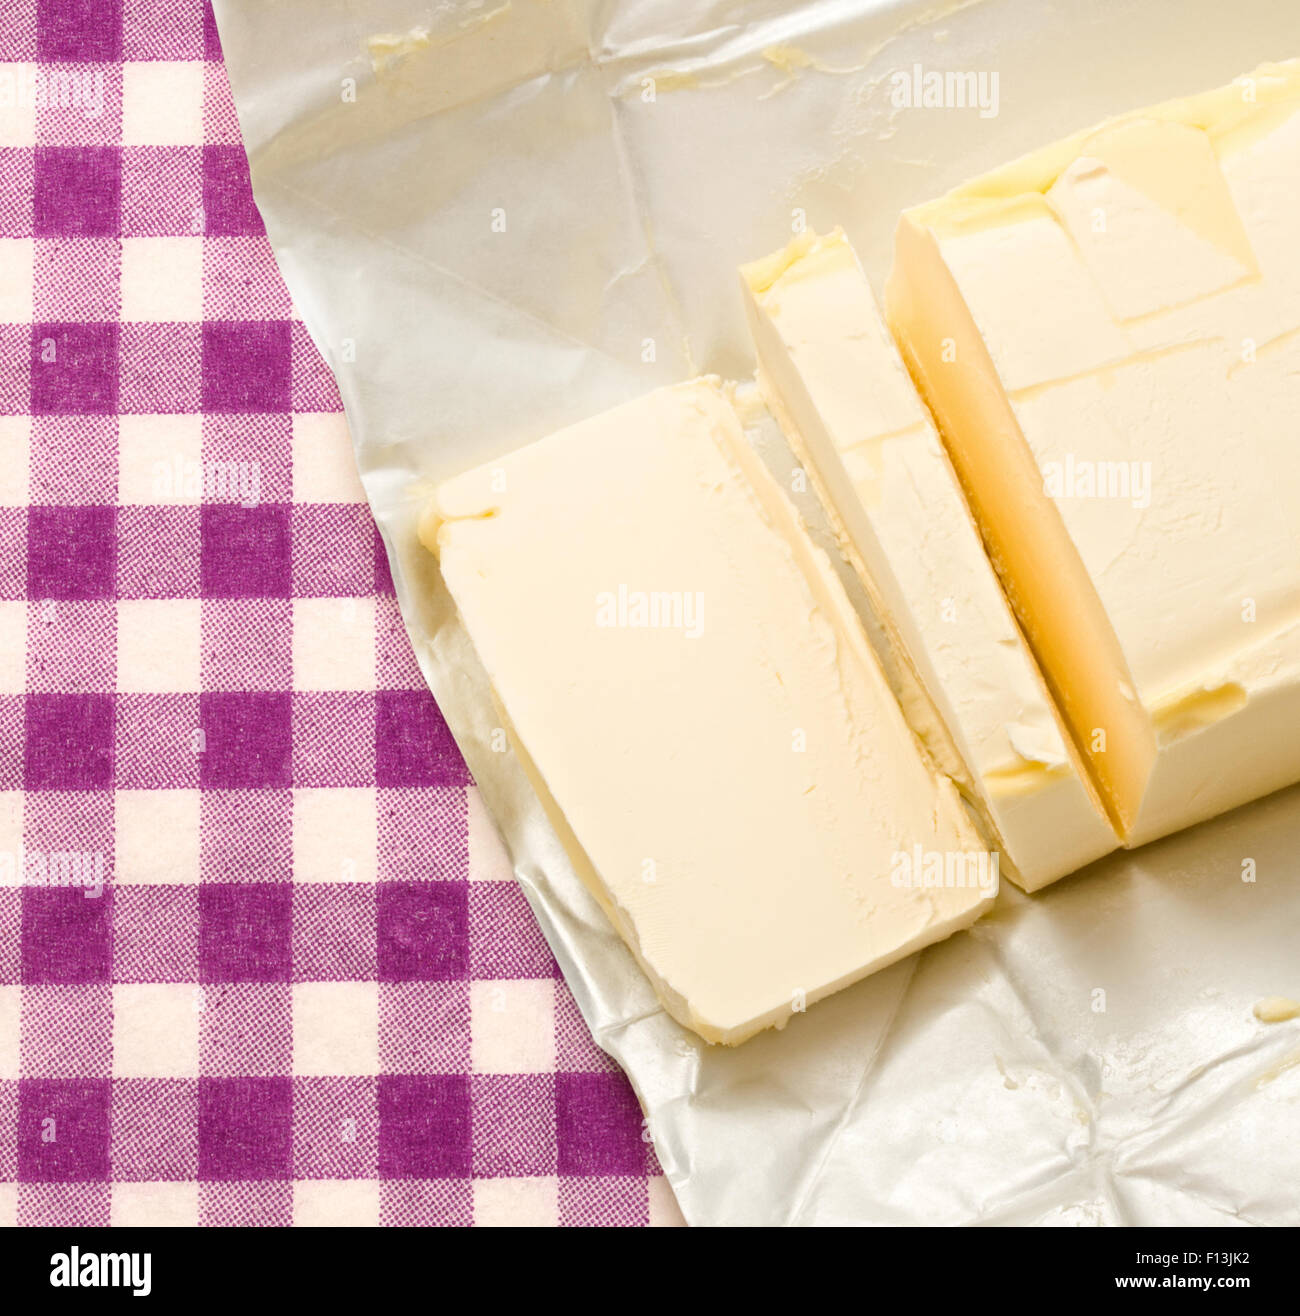 La margarine a ouvert et libre de frais coupés Banque D'Images